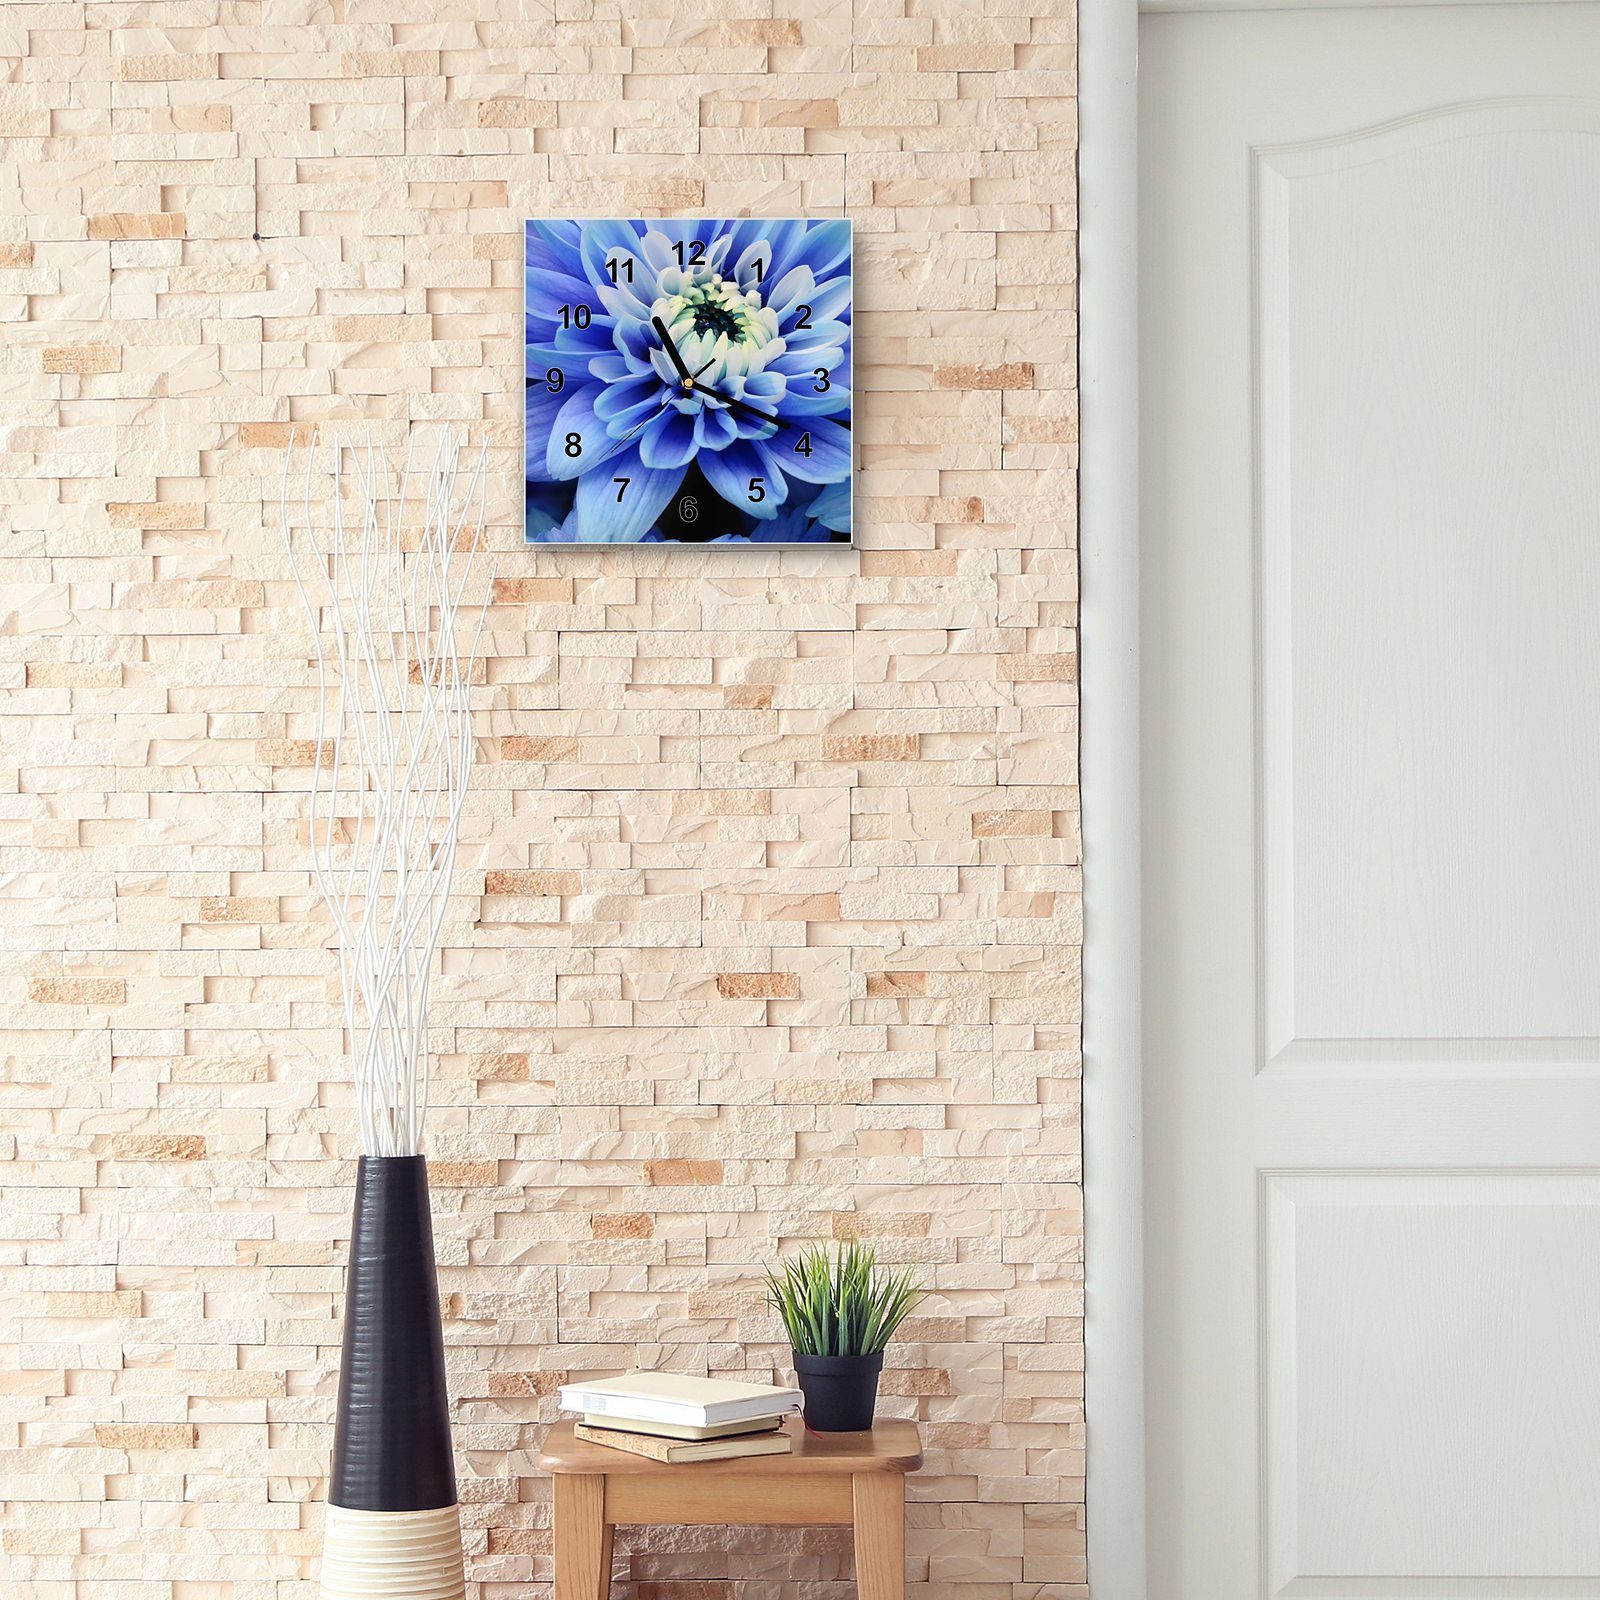 Primedeco Wanduhr Glasuhr cm 30 Wandkunst Blüten Wanduhr Blaue Größe x 30 Motiv mit